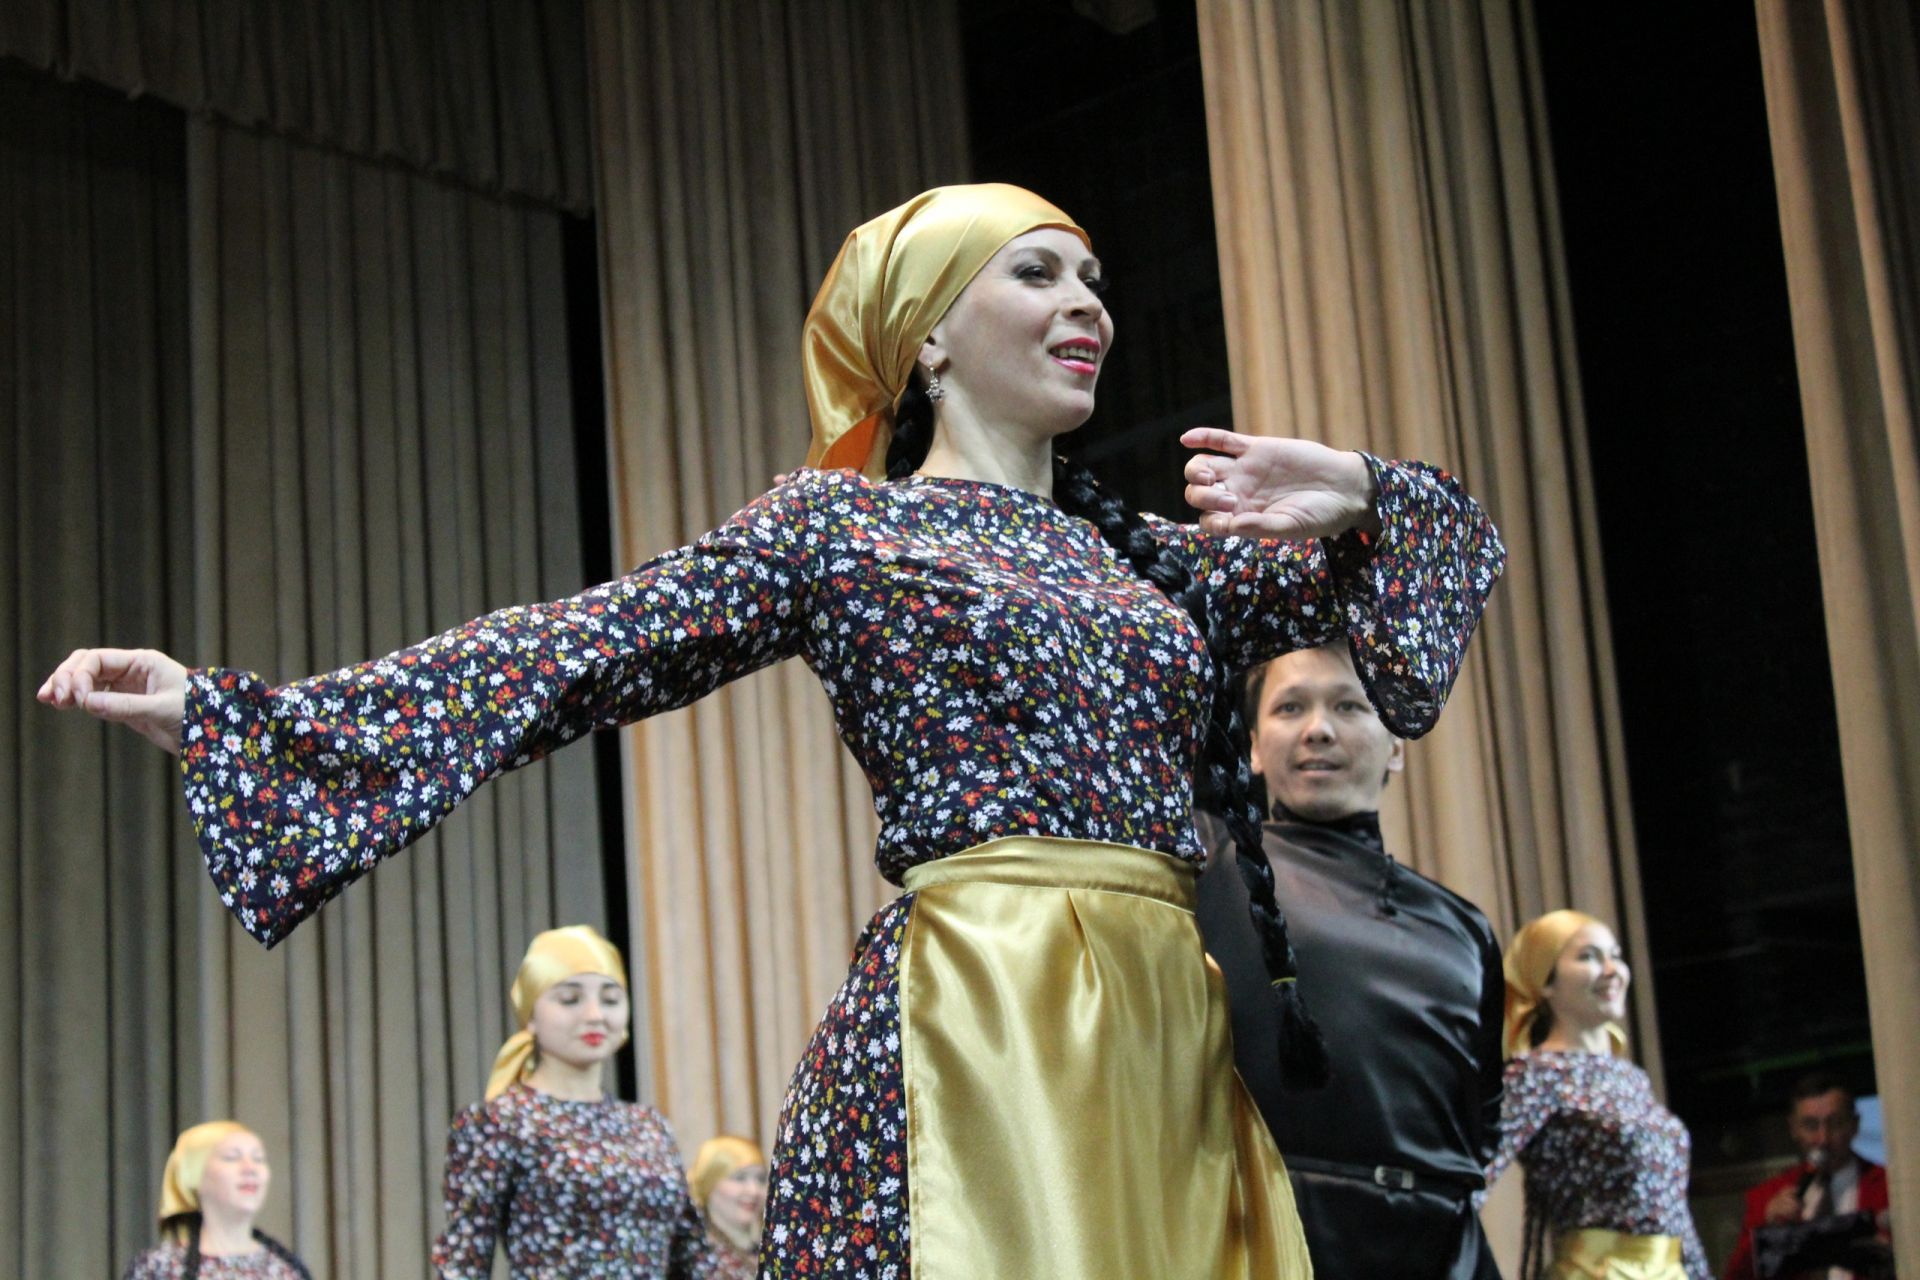 Менделеевцы выступили на отборочном туре Республиканского этнокультурного фестиваля «Наш дом – Татарстан»